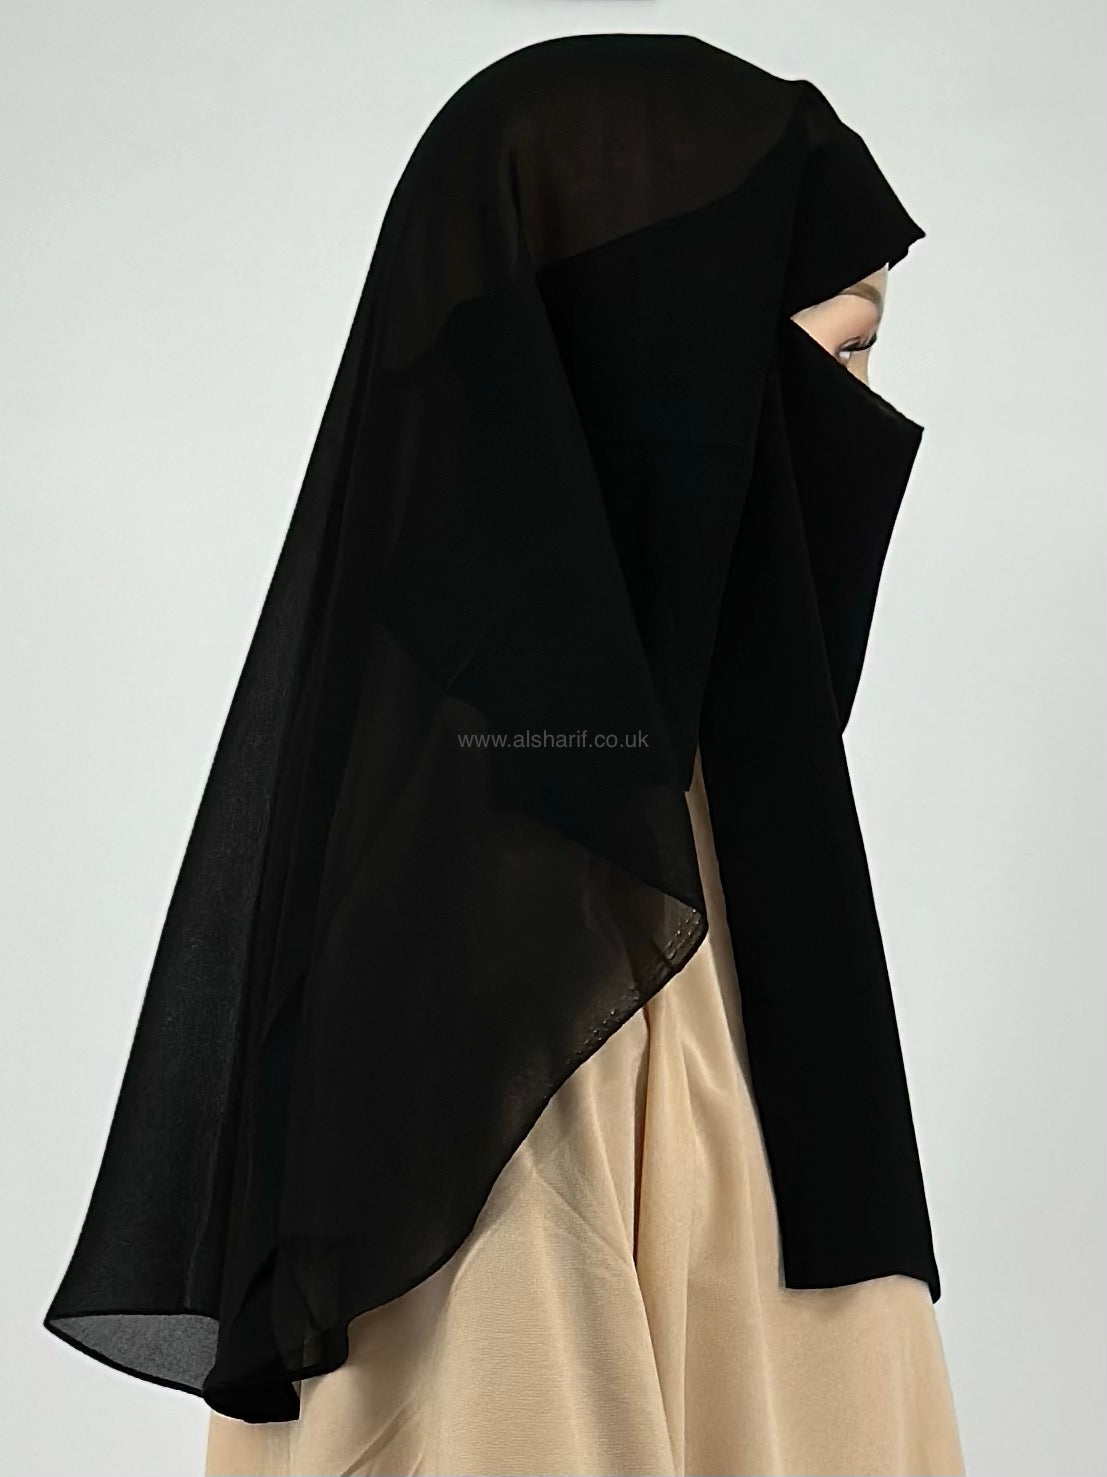 2 layer Black Niqab